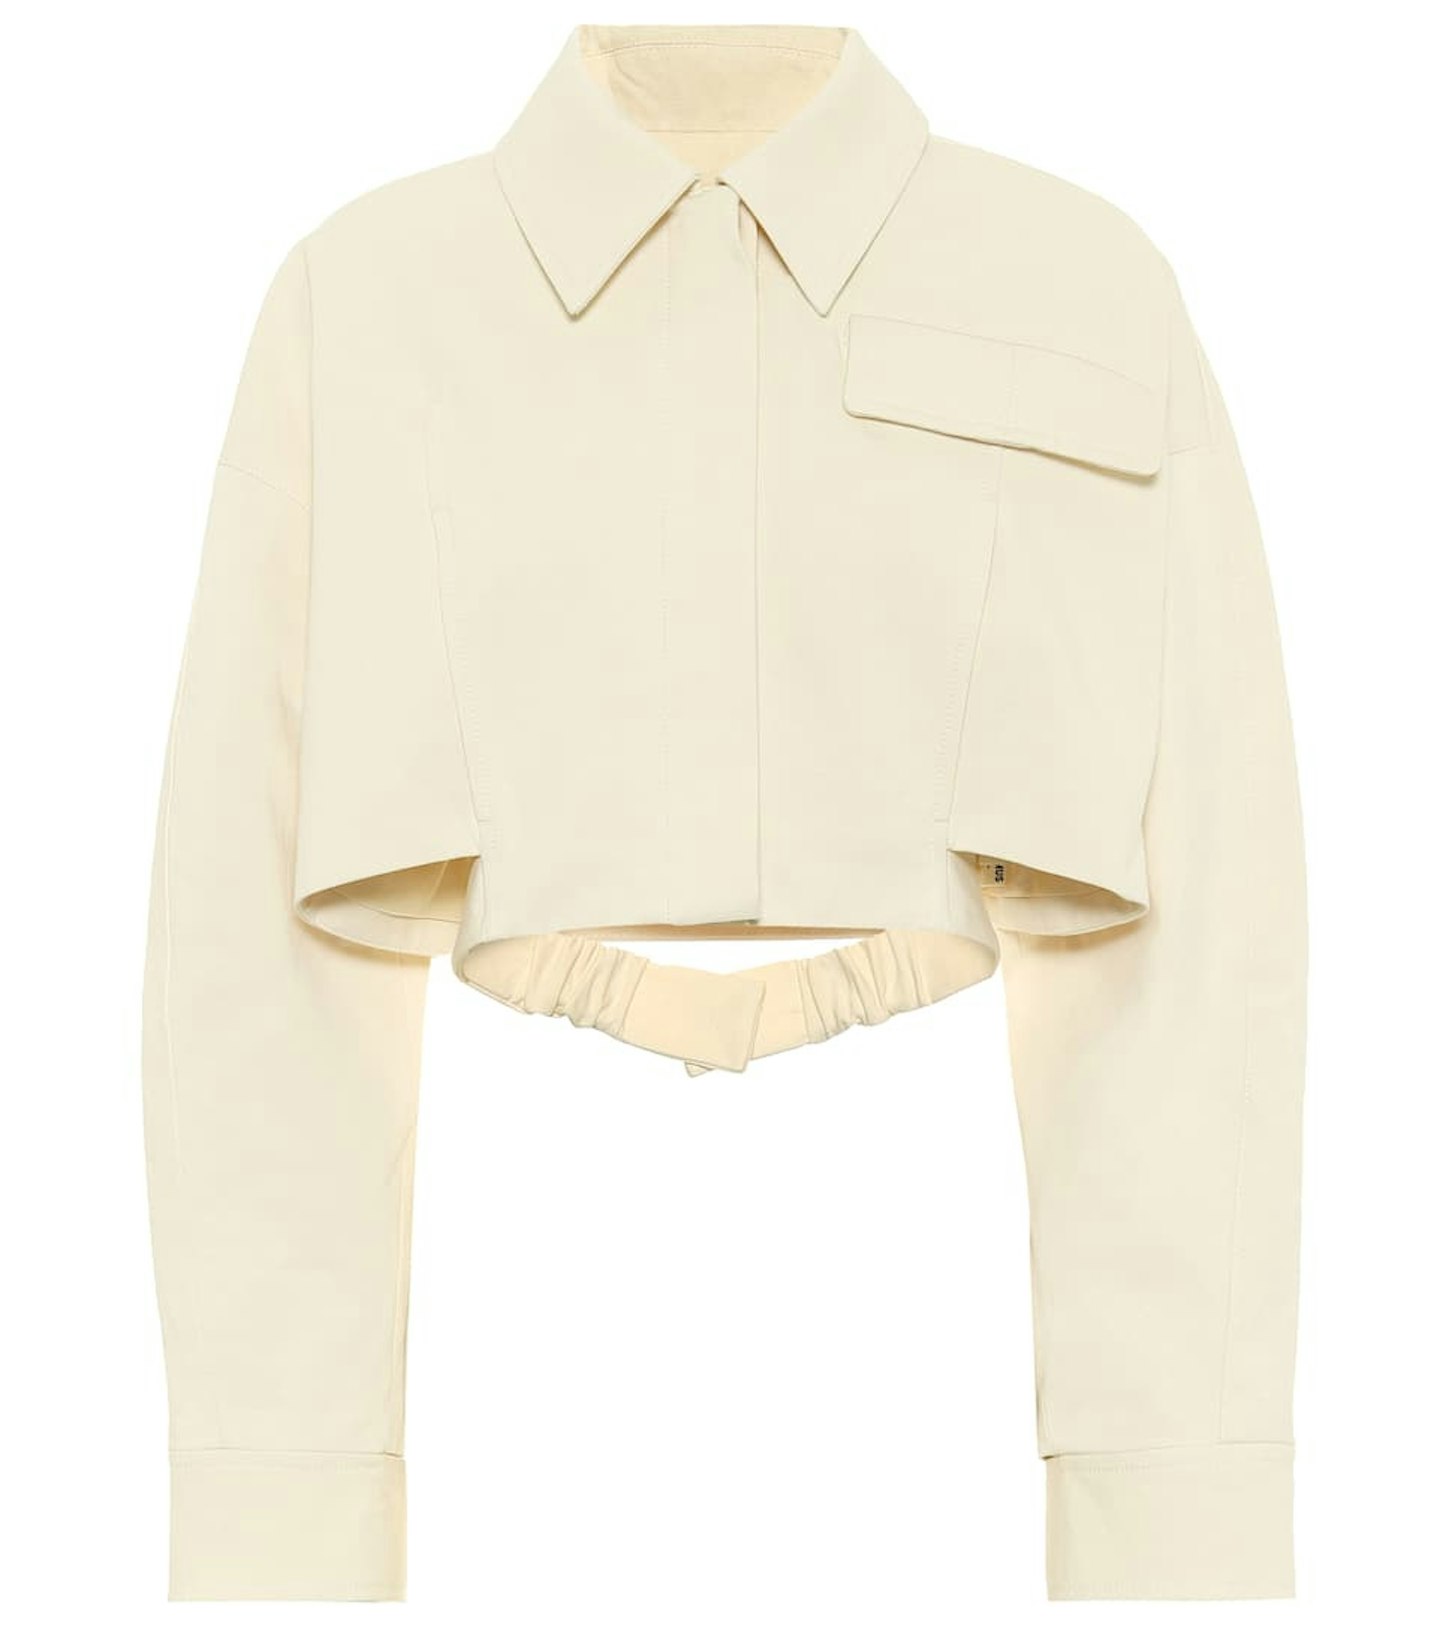 Jacquemus, La Veste Estelle Cotton Jacket, £441 at MyTheresa